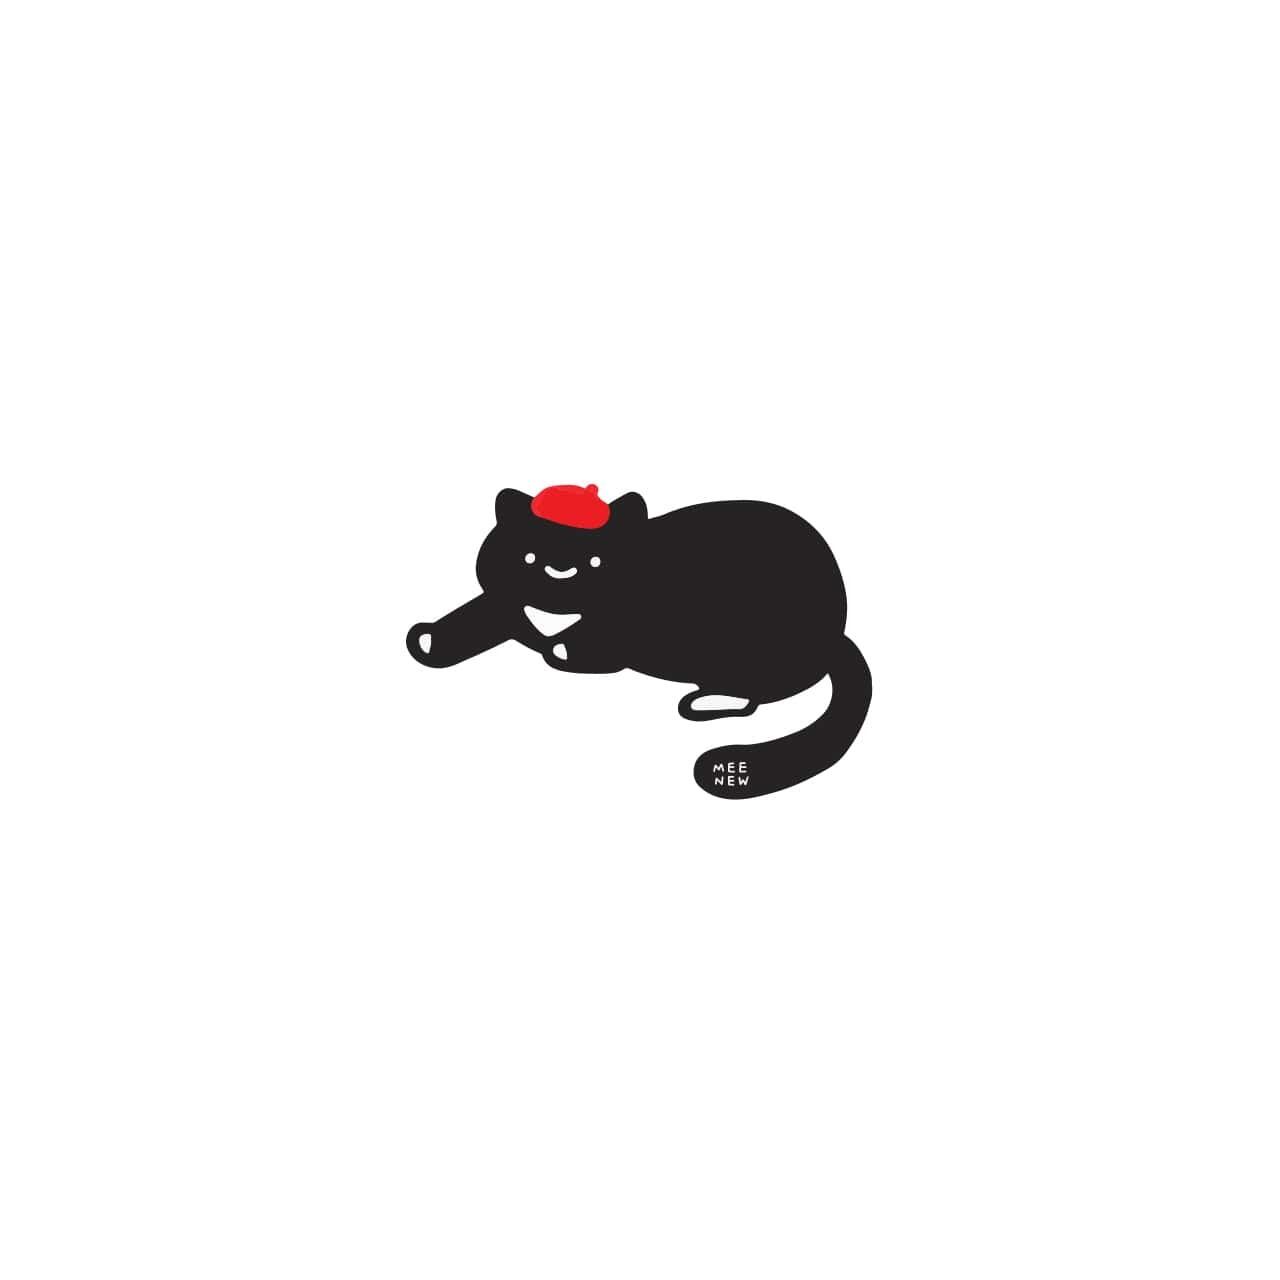 透明 クリア スマホケース ソフト Meenew かわいい 黒猫 イラスト キャラクター 韓国 デザイナーズ Iphone Android スマホ 携帯カバー ブラックキャット Mn01 アイフォン ギャラクシー Galaxy 韓国スマホケース専門店 Korean Case